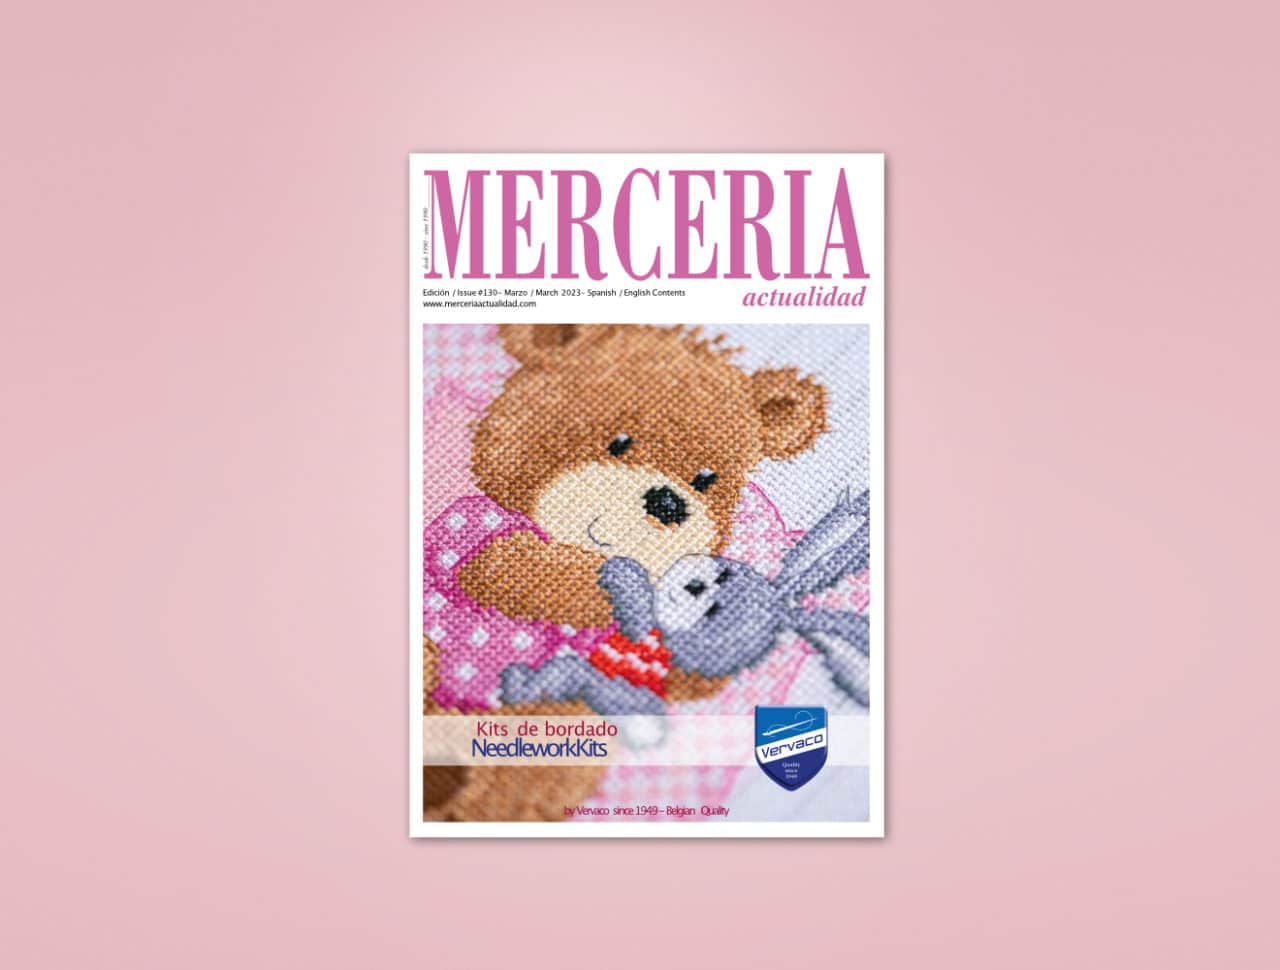 Merceria 130 23 addi Shapes - Merceria Press Release